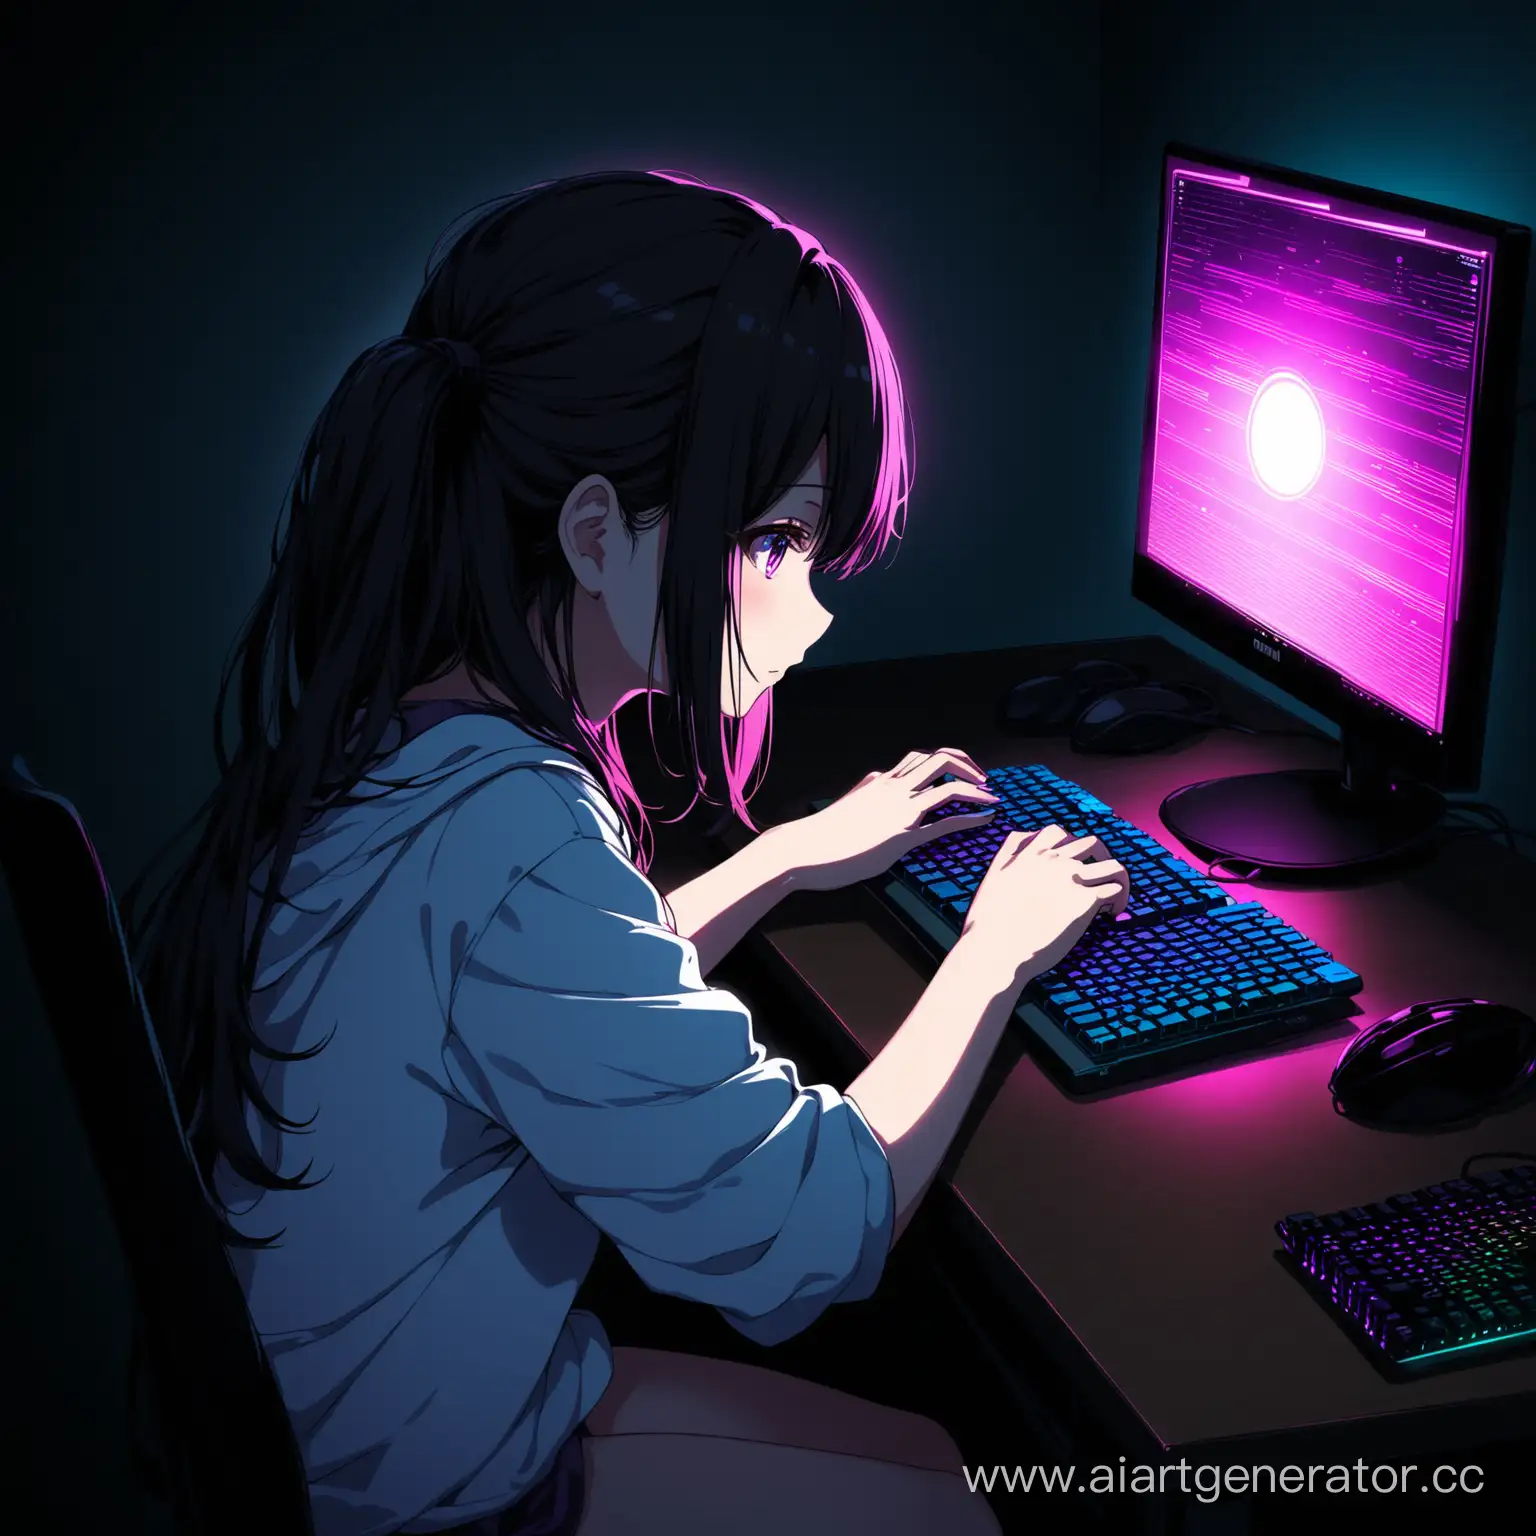 аниме девушка играющая в пк в темноте
с пк на столе с rgb
